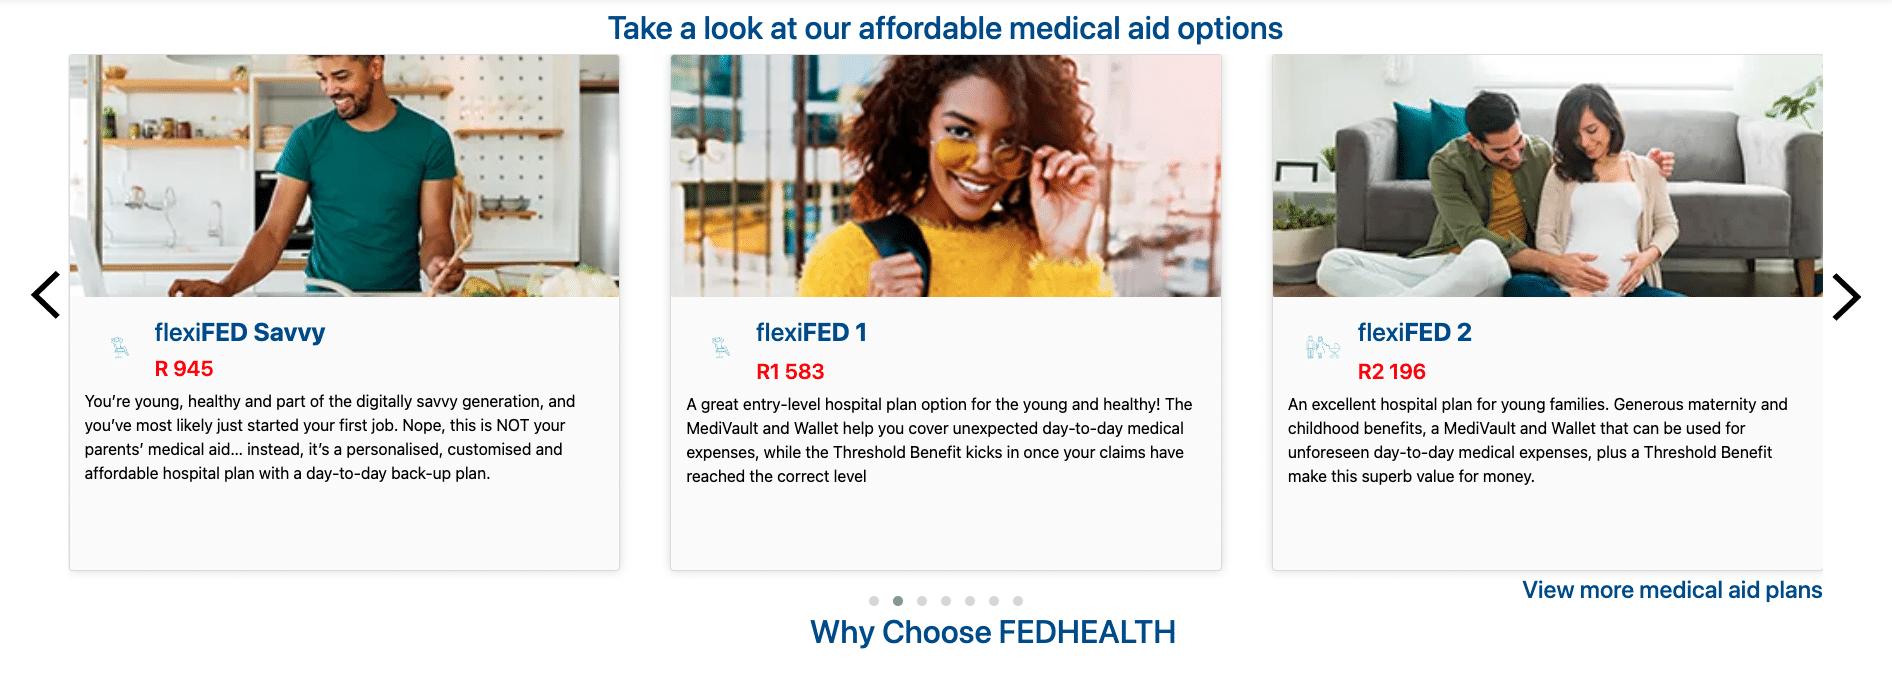 Fedhealth Medical Aid Plans